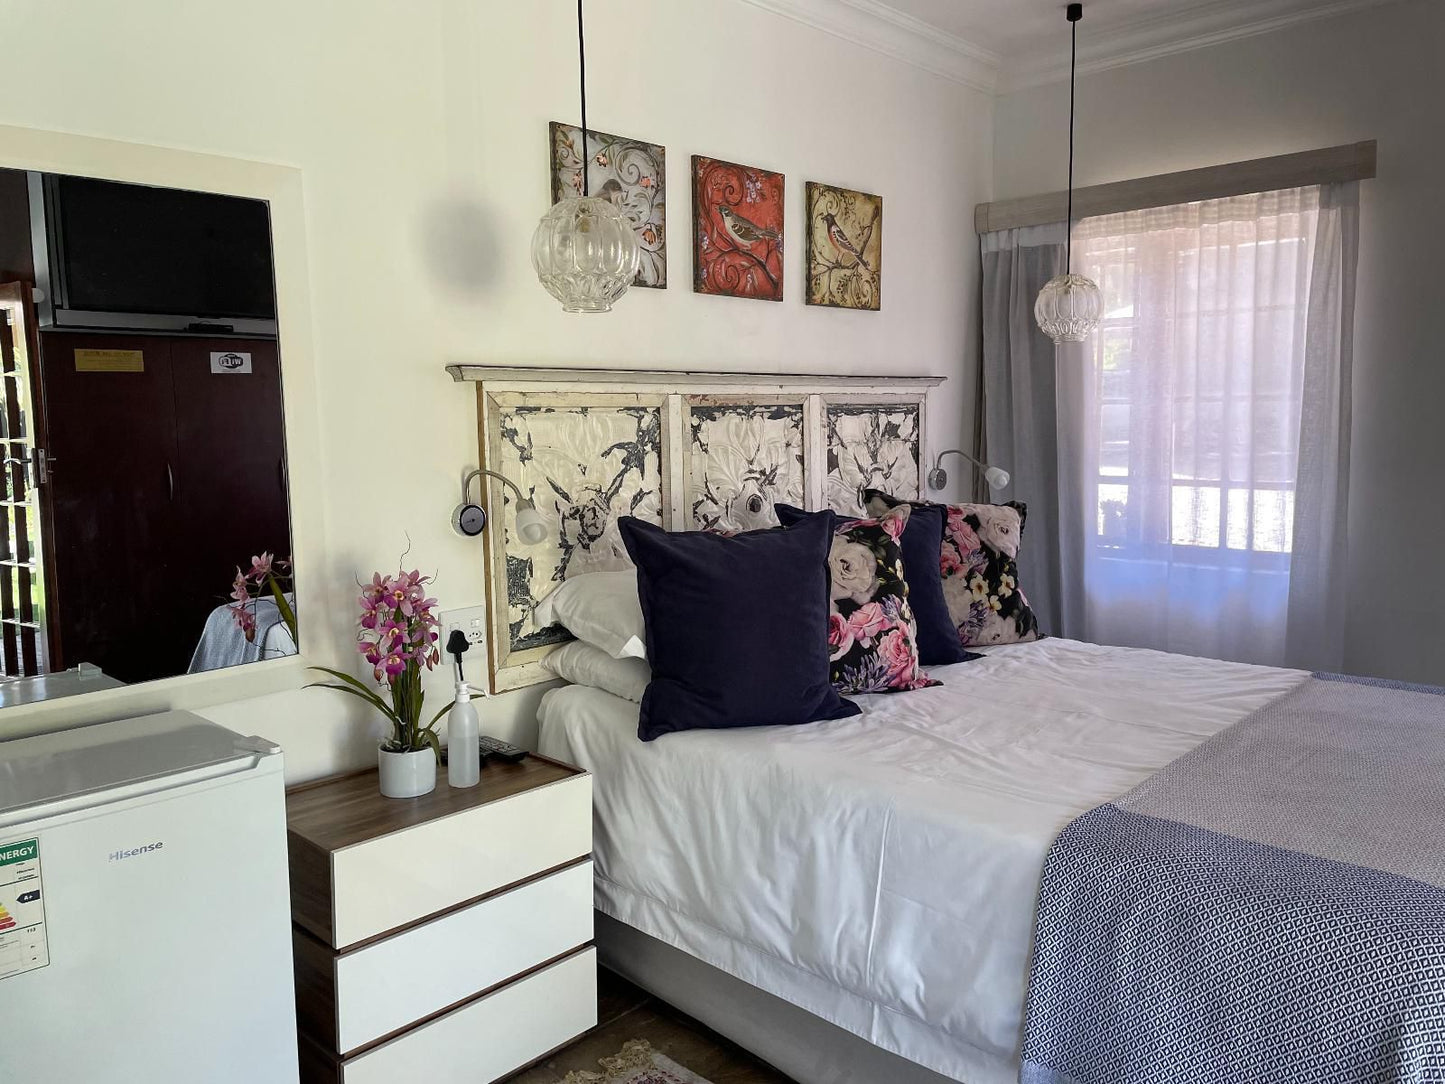 Inbloem Dan Pienaar Bloemfontein Free State South Africa Bedroom